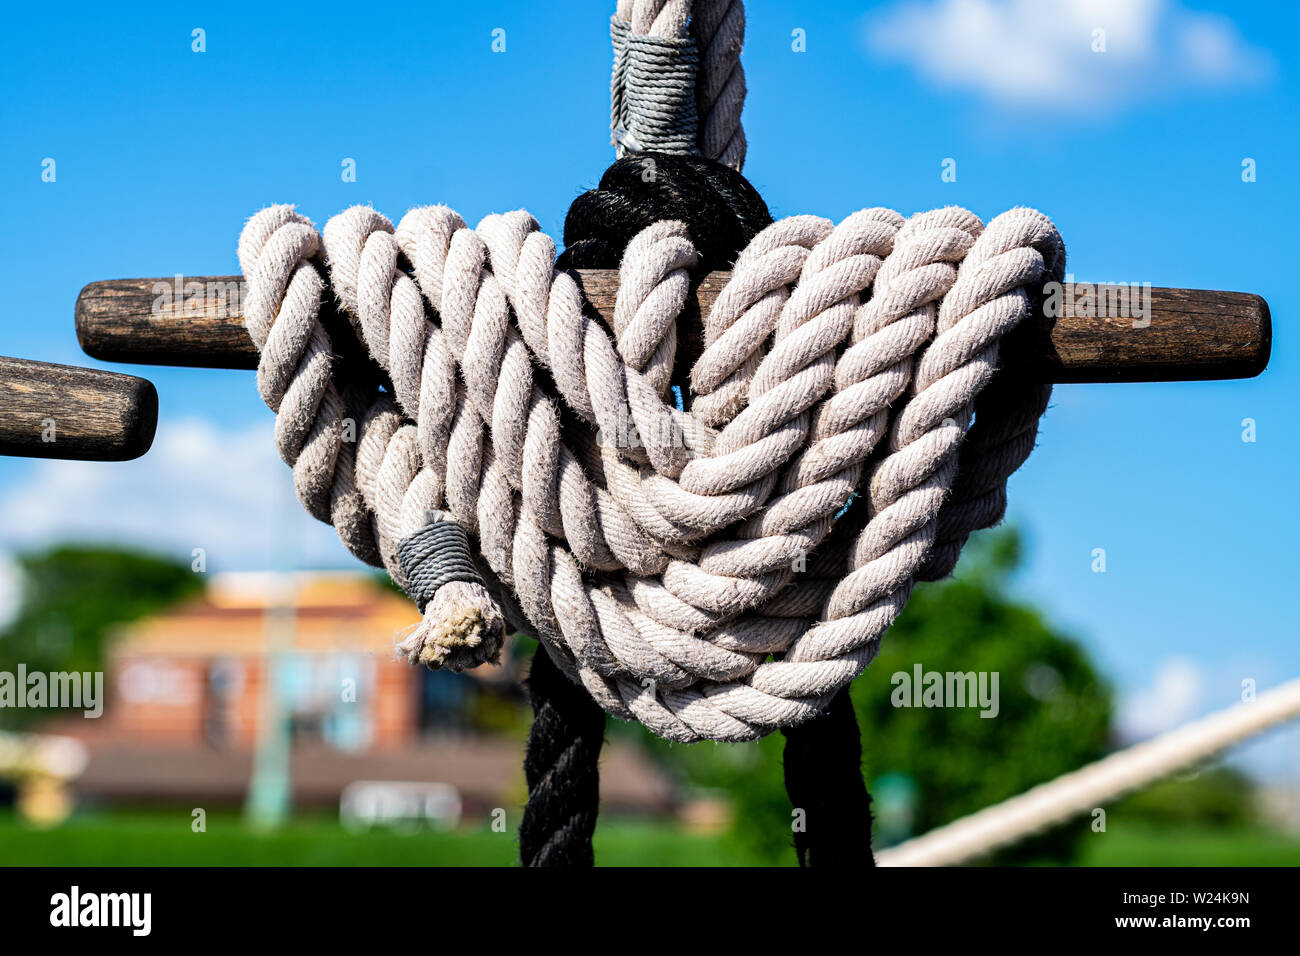 Cordes maritimes à bord d'un voilier. Banque D'Images